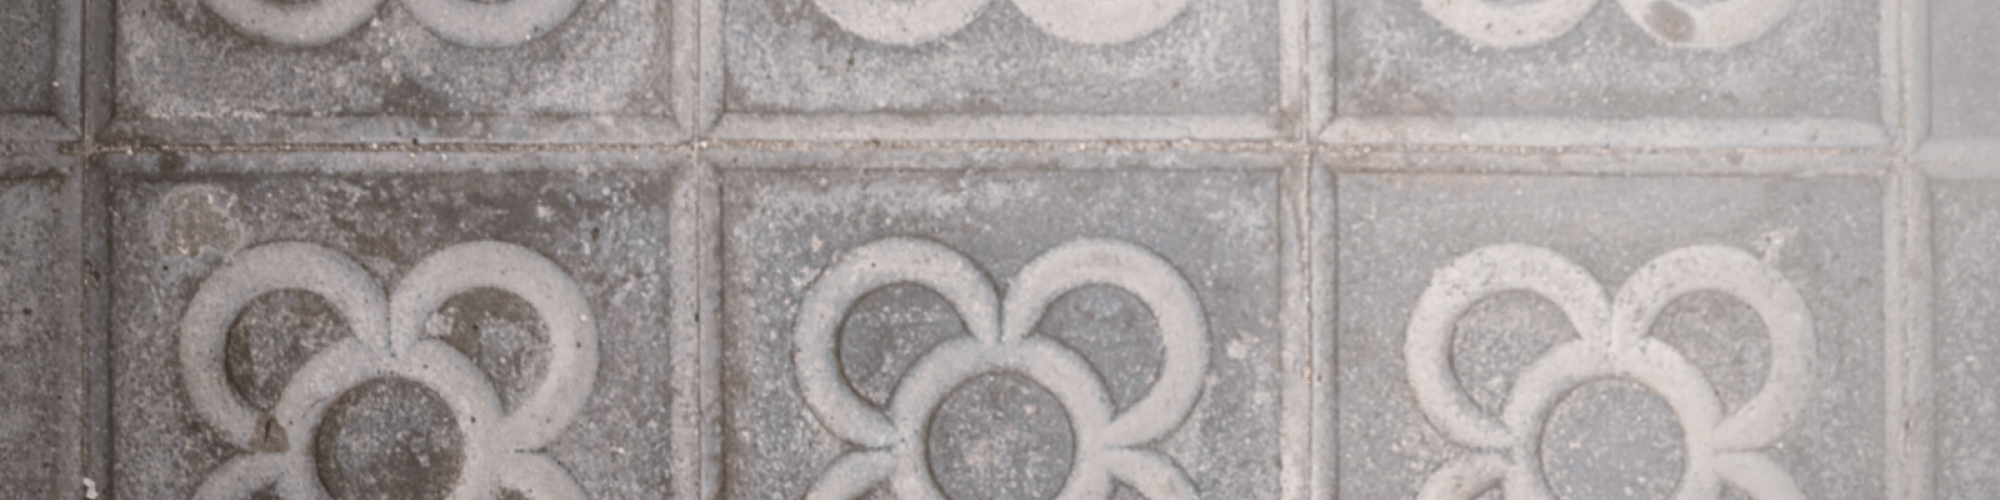 The Flor de Barcelona tile pattern in concrete